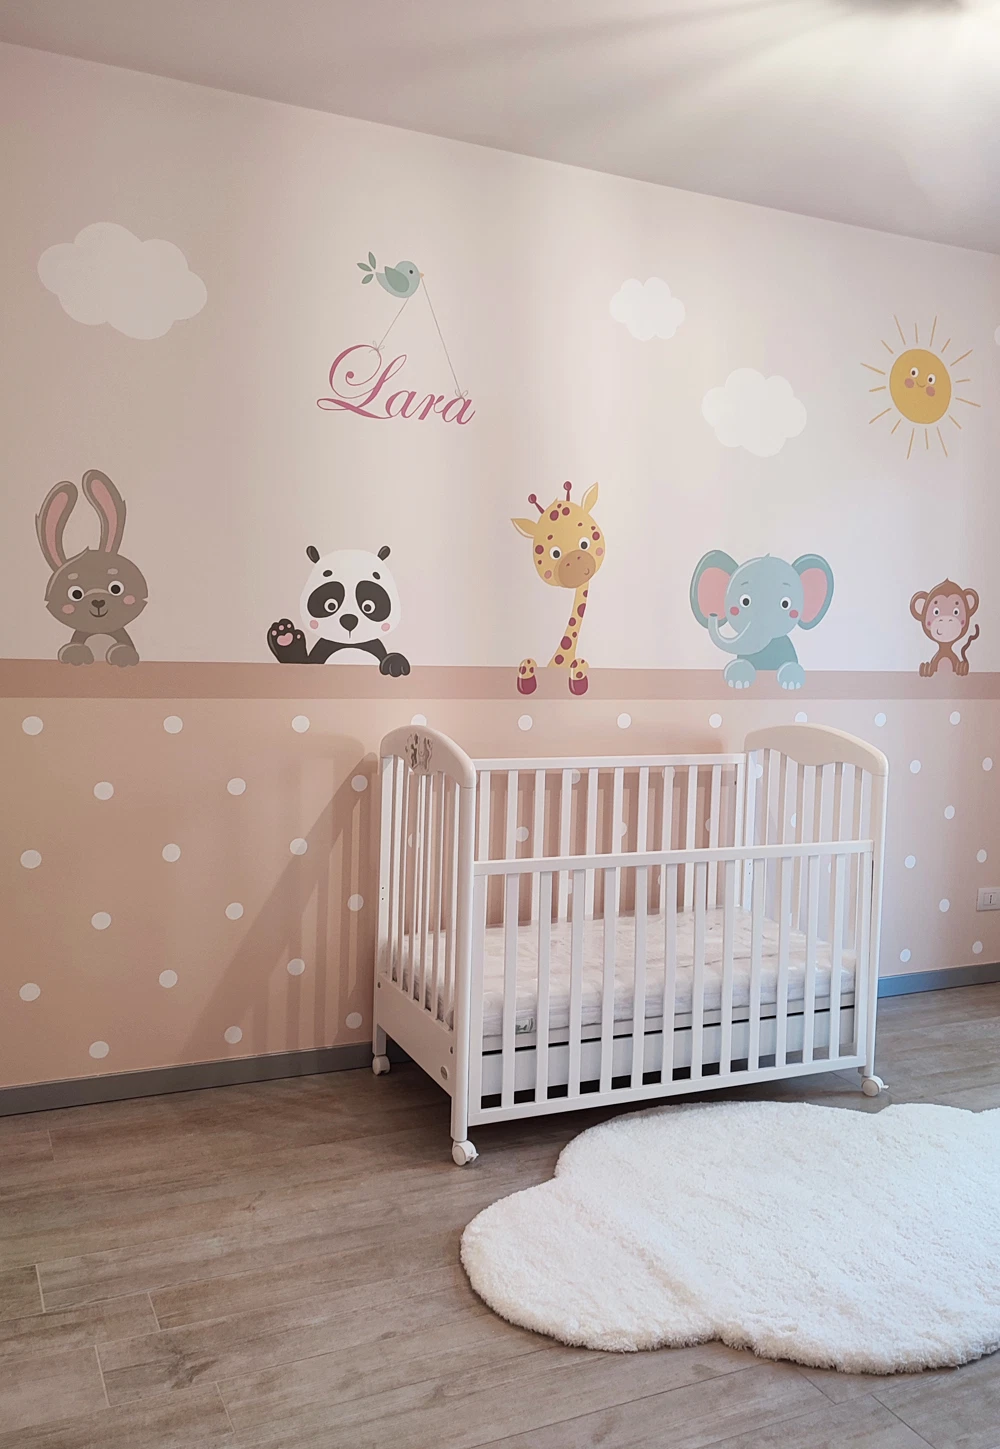 Fondali per fotografia astratta sfumata parete tinta unita autoritratto Pet  Baby neonato compleanno sfondi per Studio fotografico